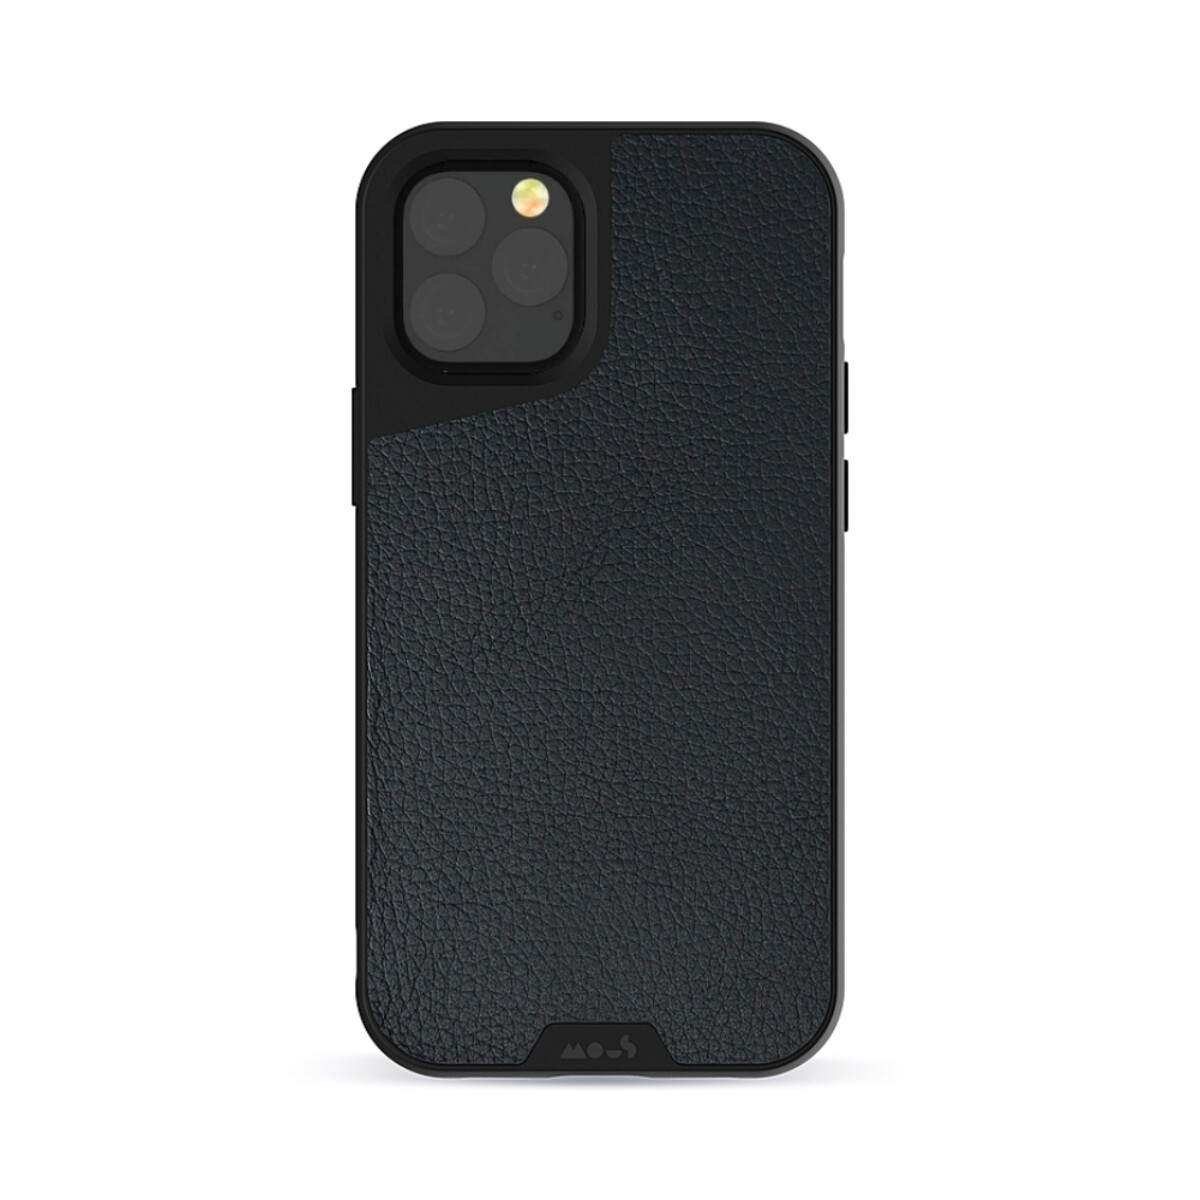 Mous case limitless 3.0 iphone 12 mini - Cuero negro 